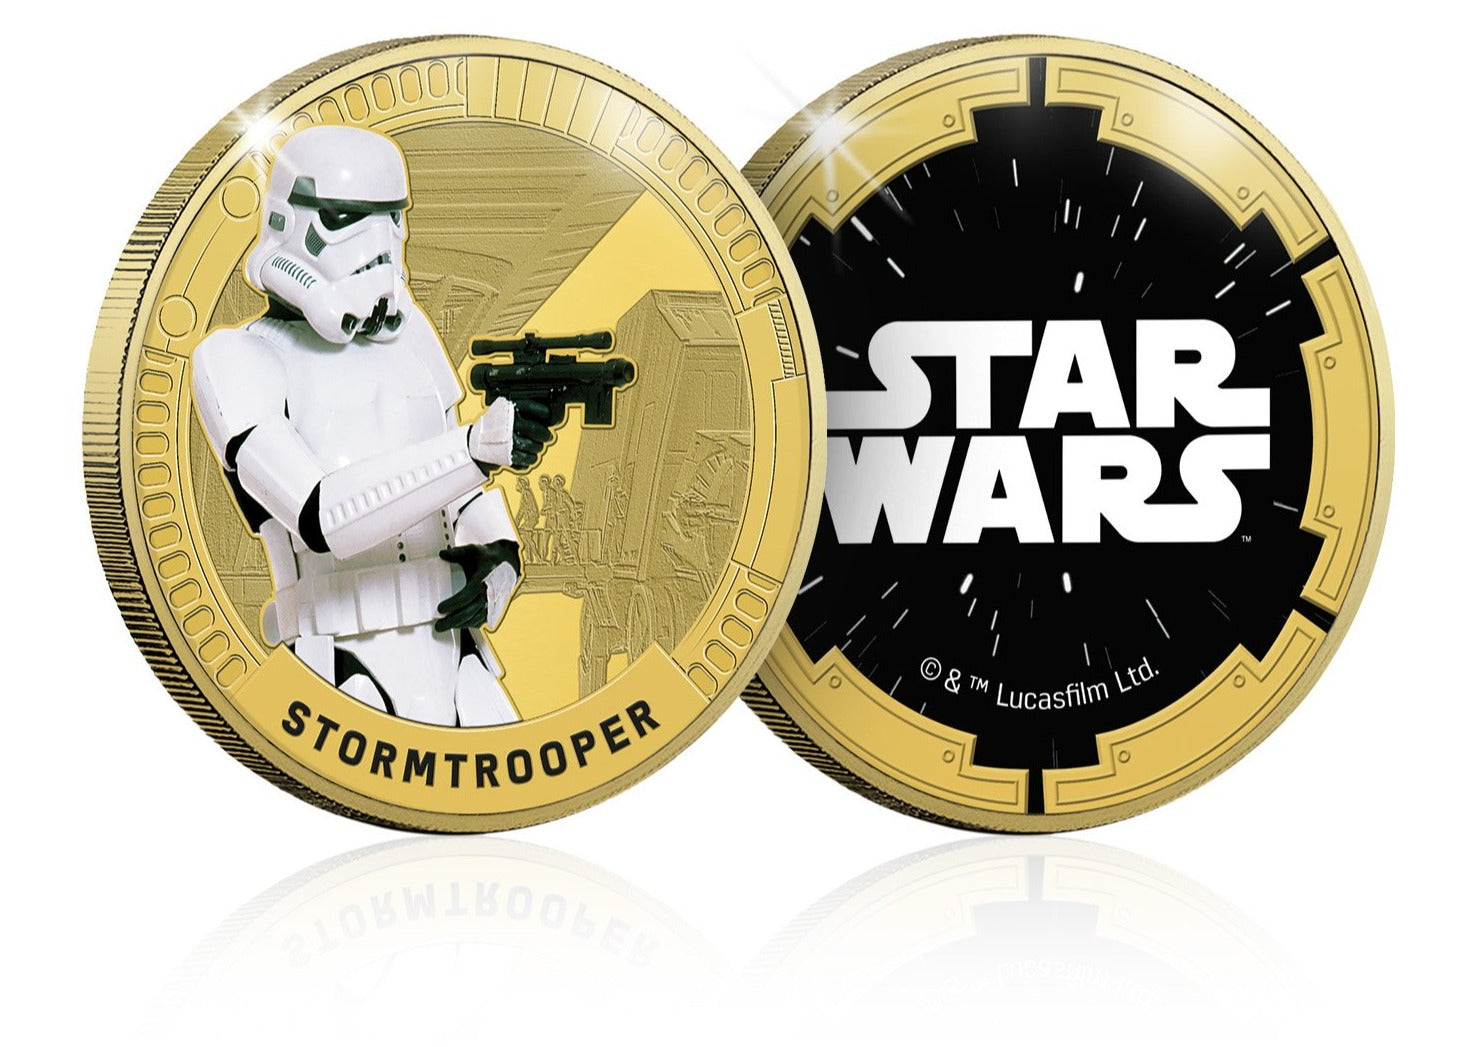 Star Wars Trilogía Original Episodios IV - VI - Stormtrooper - Moneda / Medalla conmemorativa acuñada con baño en Oro 24 quilates y coloreada a 4 colores - 44mm